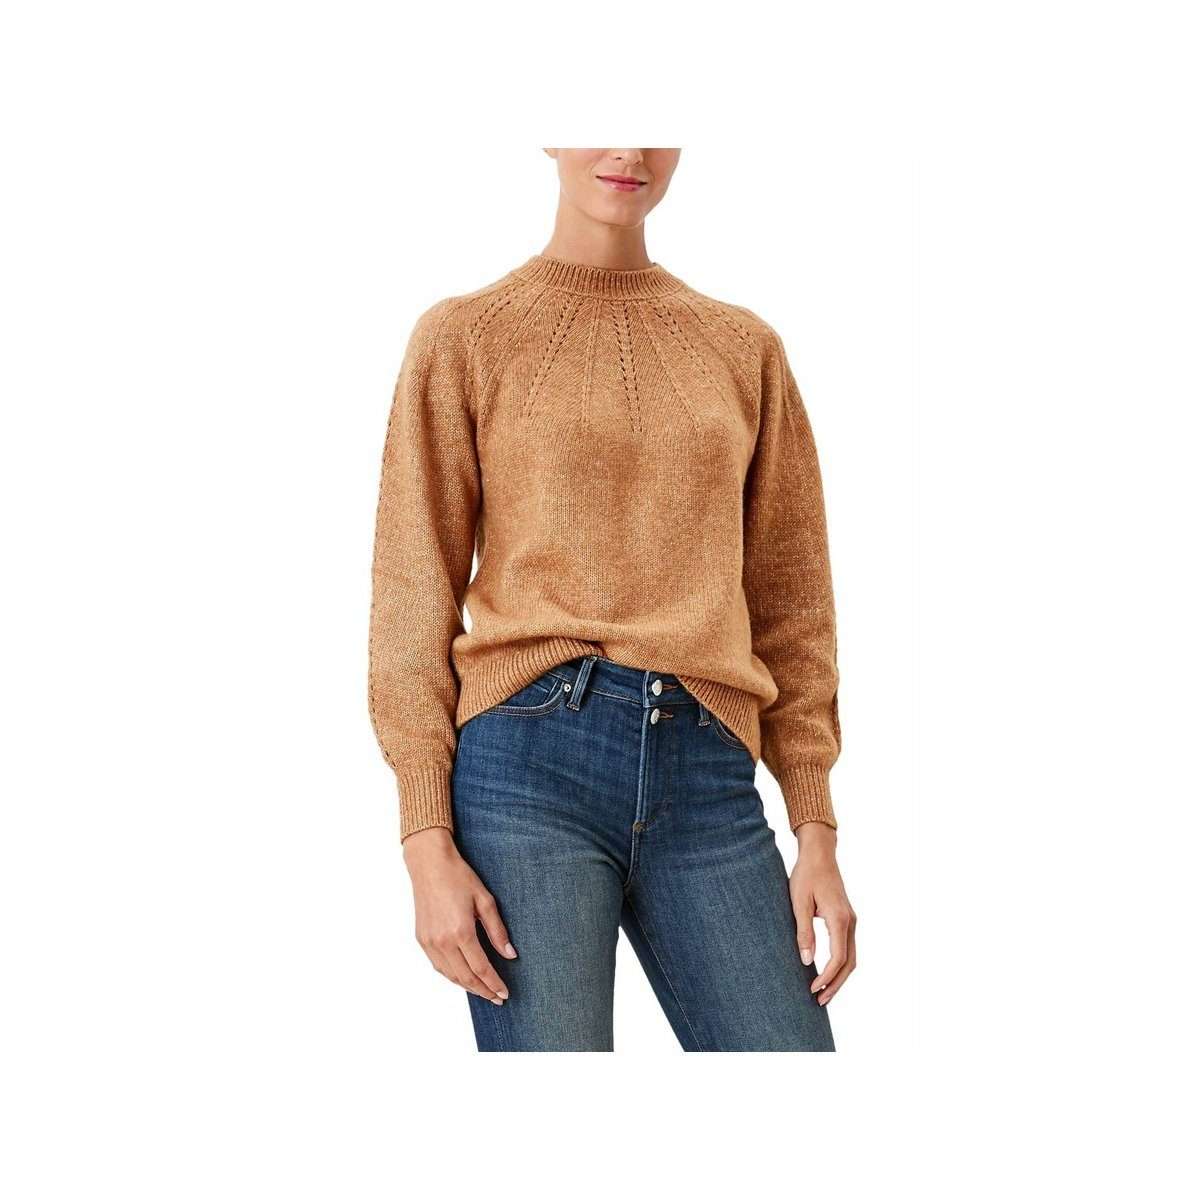 Длинный свитер коричневого цвета (1 шт.)